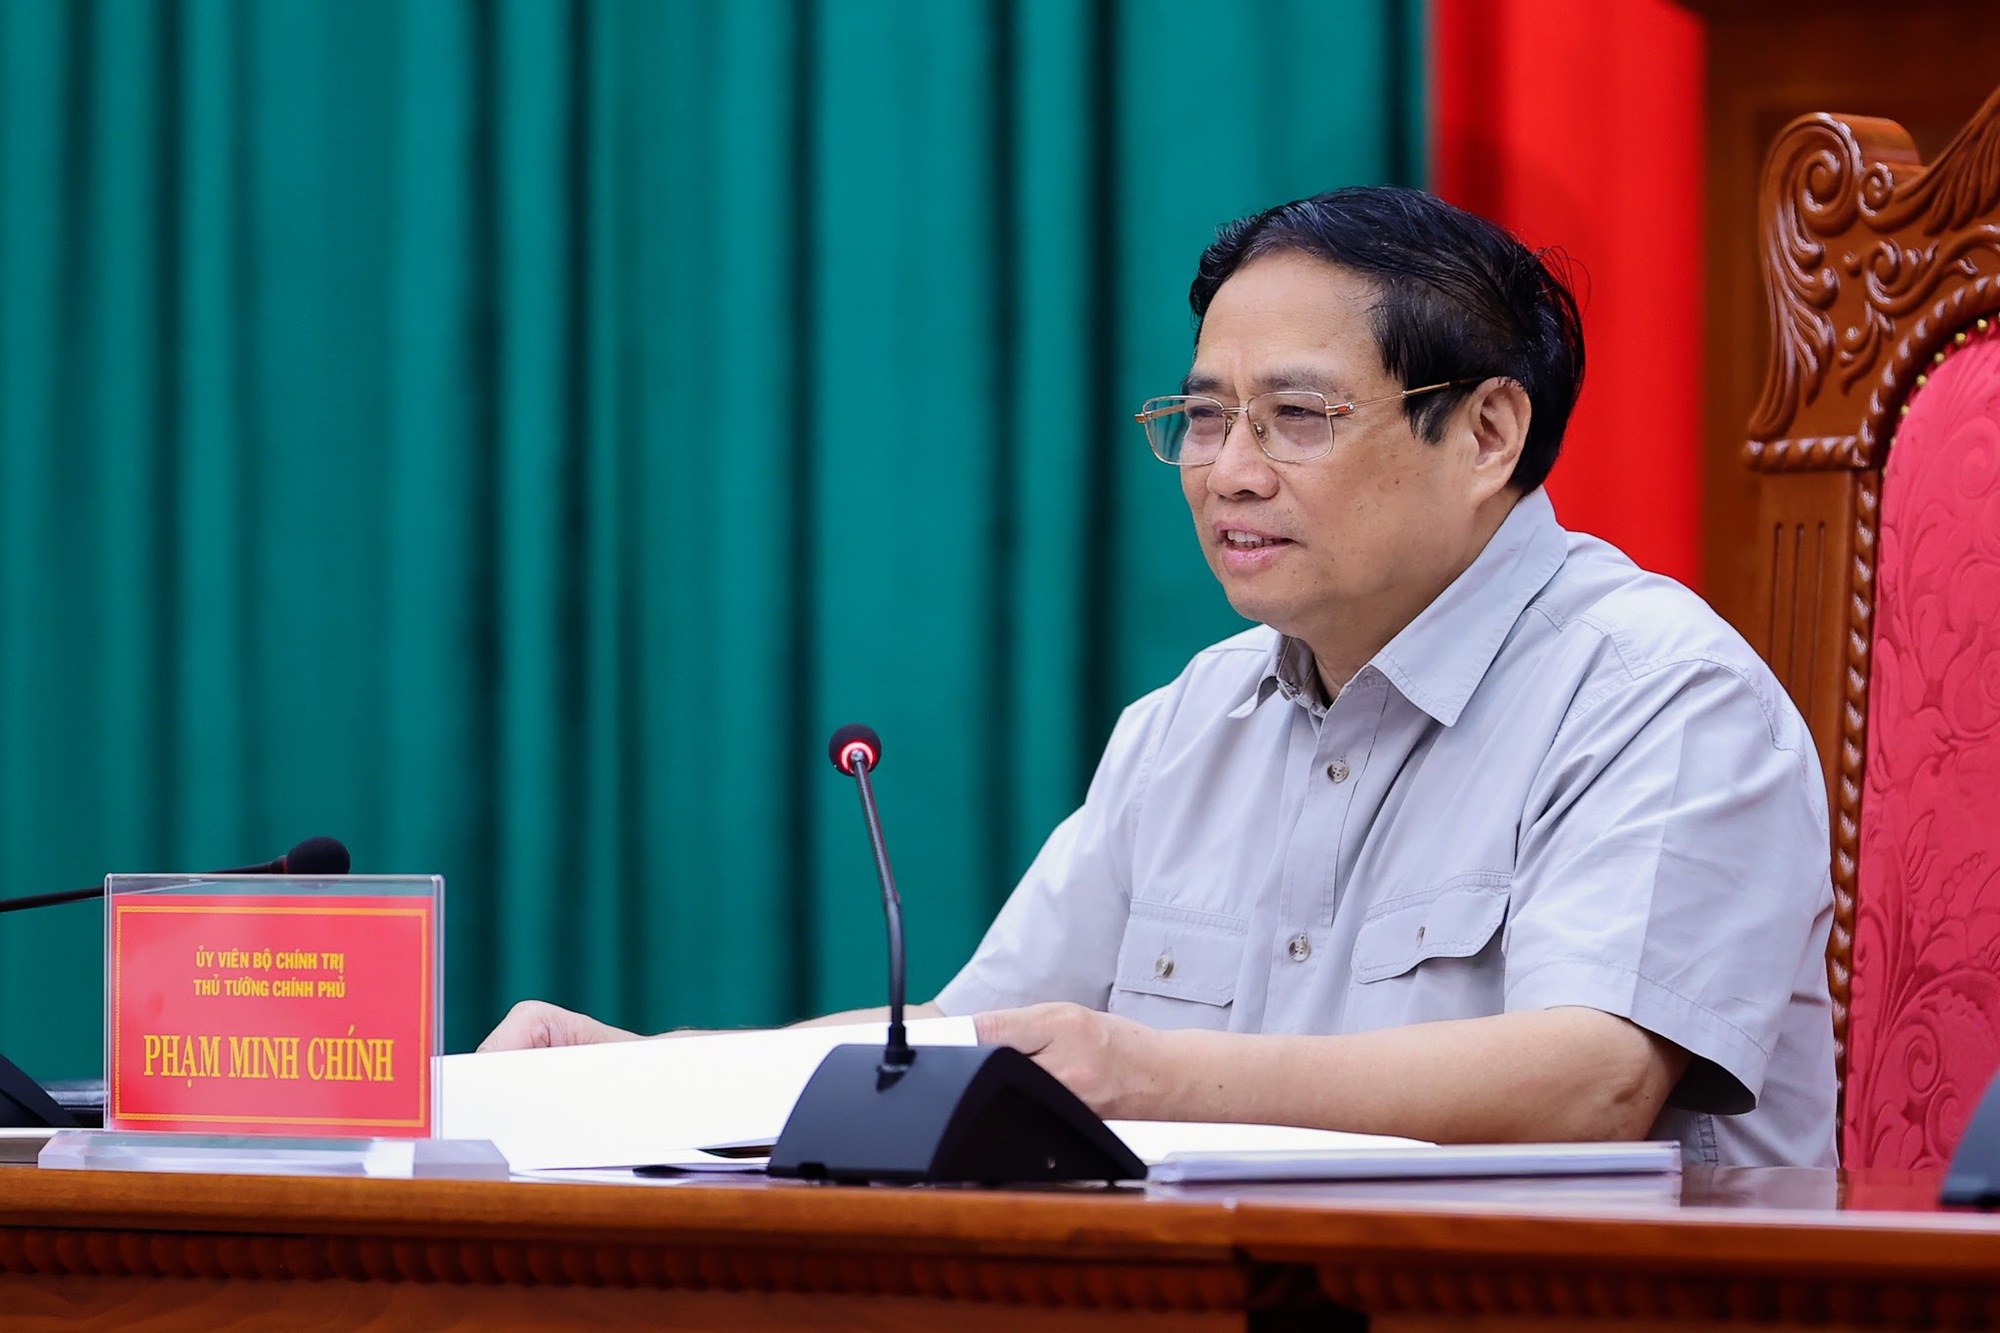 Thủ tướng cho rằng du lịch, dịch vụ và nông nghiệp công nghệ cao là những lợi thế khác biệt của Kon Tum